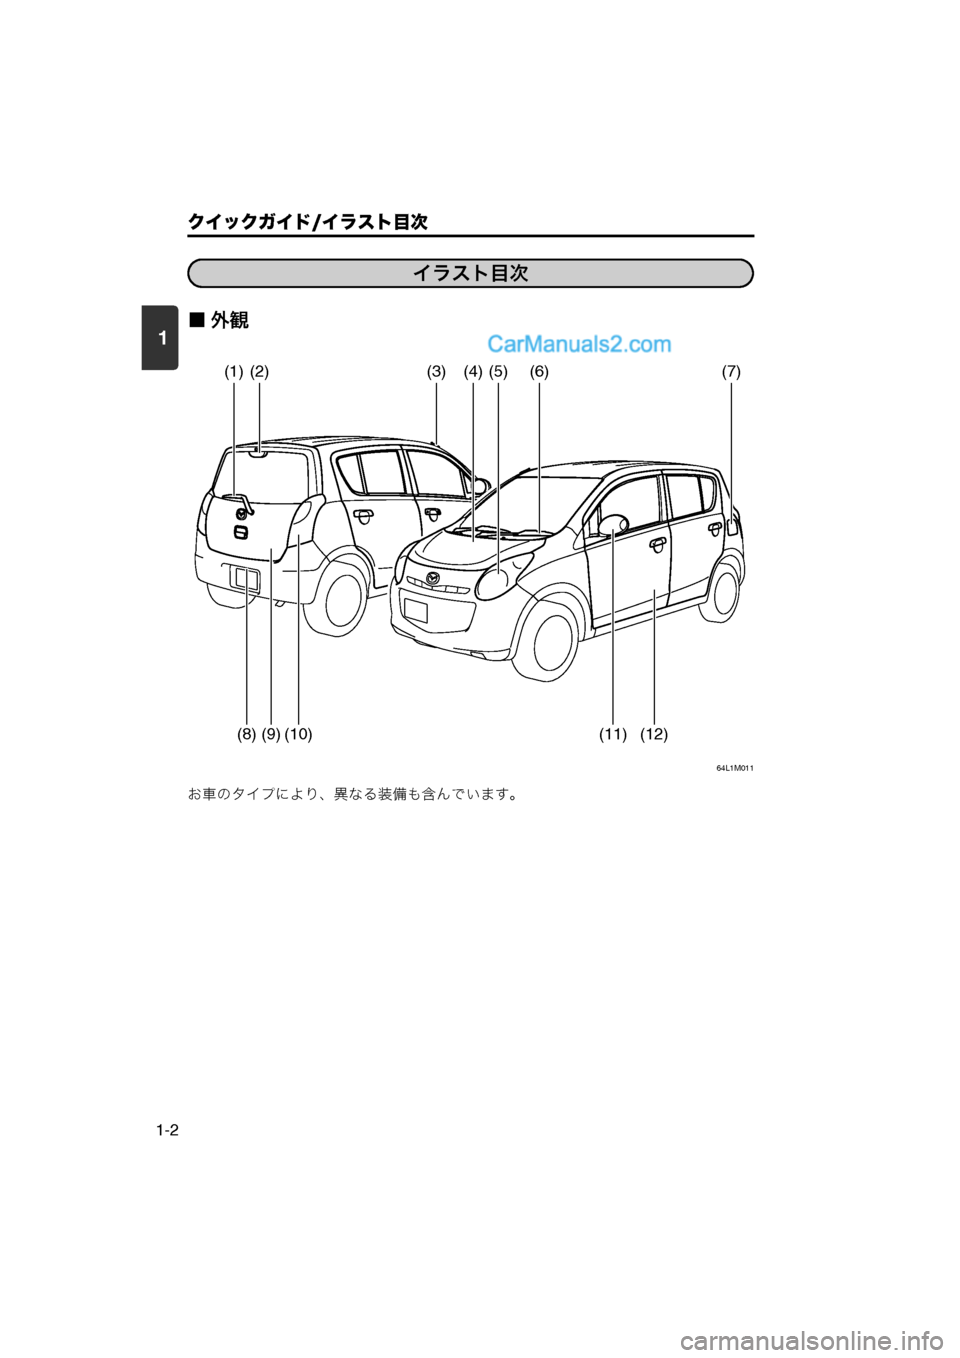 MAZDA MODEL CARROL 2013  取扱説明書 (キャロル) (in Japanese) 1
クイックガイド/イラスト目次
1-2
■外観
64L1M011
お車のタイプにより、異なる装備も含んでいます。
1. クイックガイドイラスト目次
イラスト目次
(1